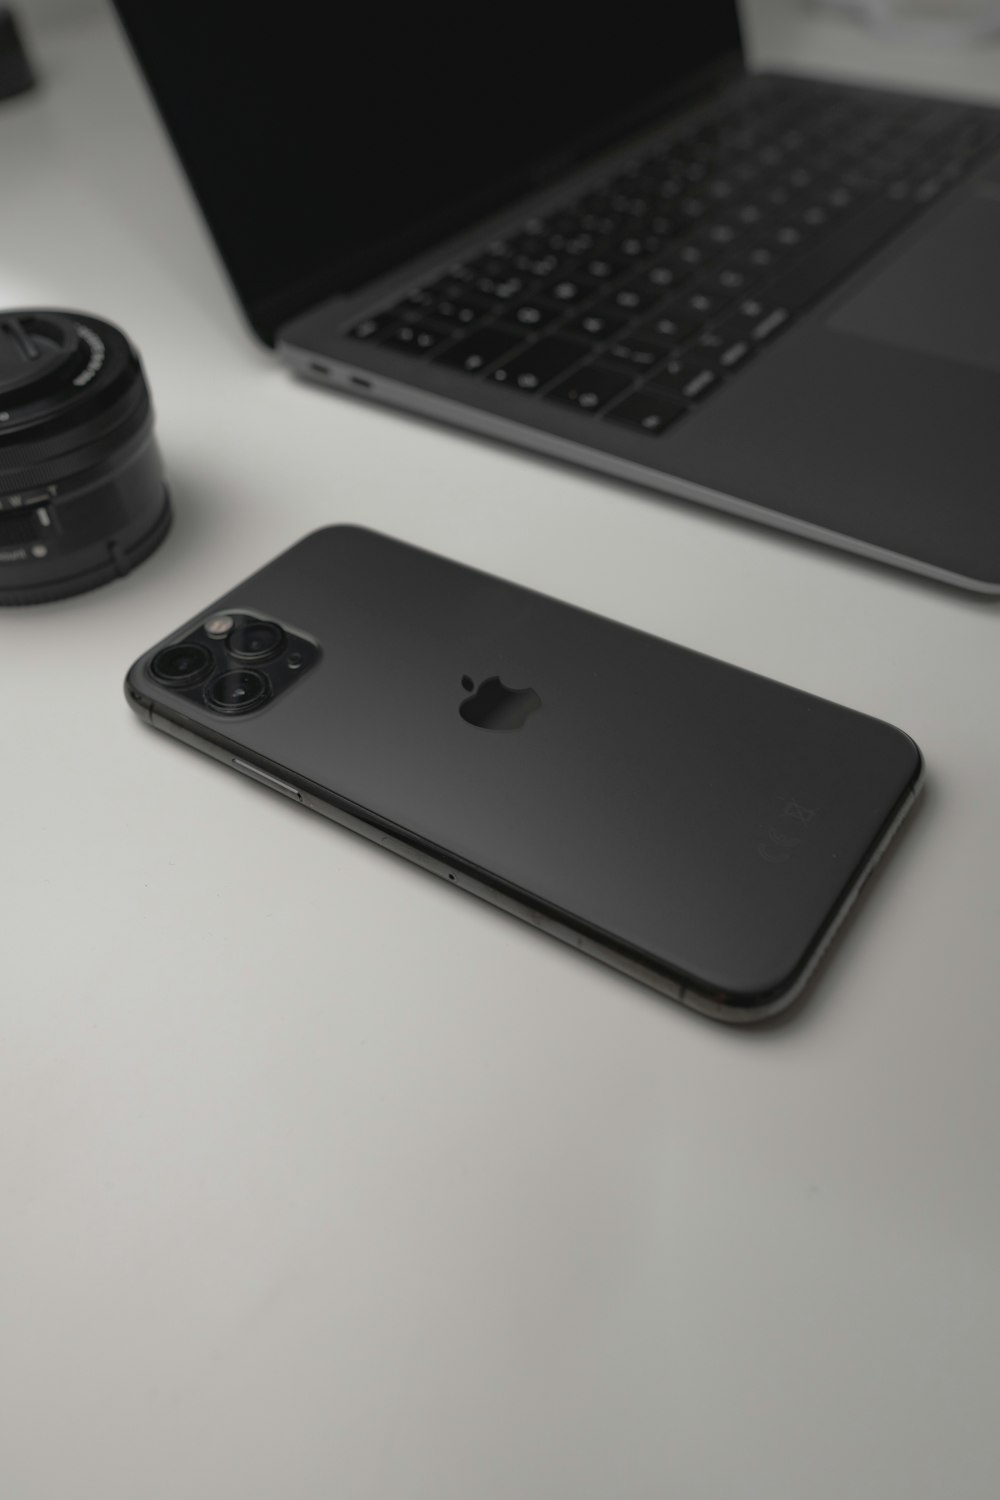 iPhone 7 nero accanto all'obiettivo nero della fotocamera e all'obiettivo nero della fotocamera